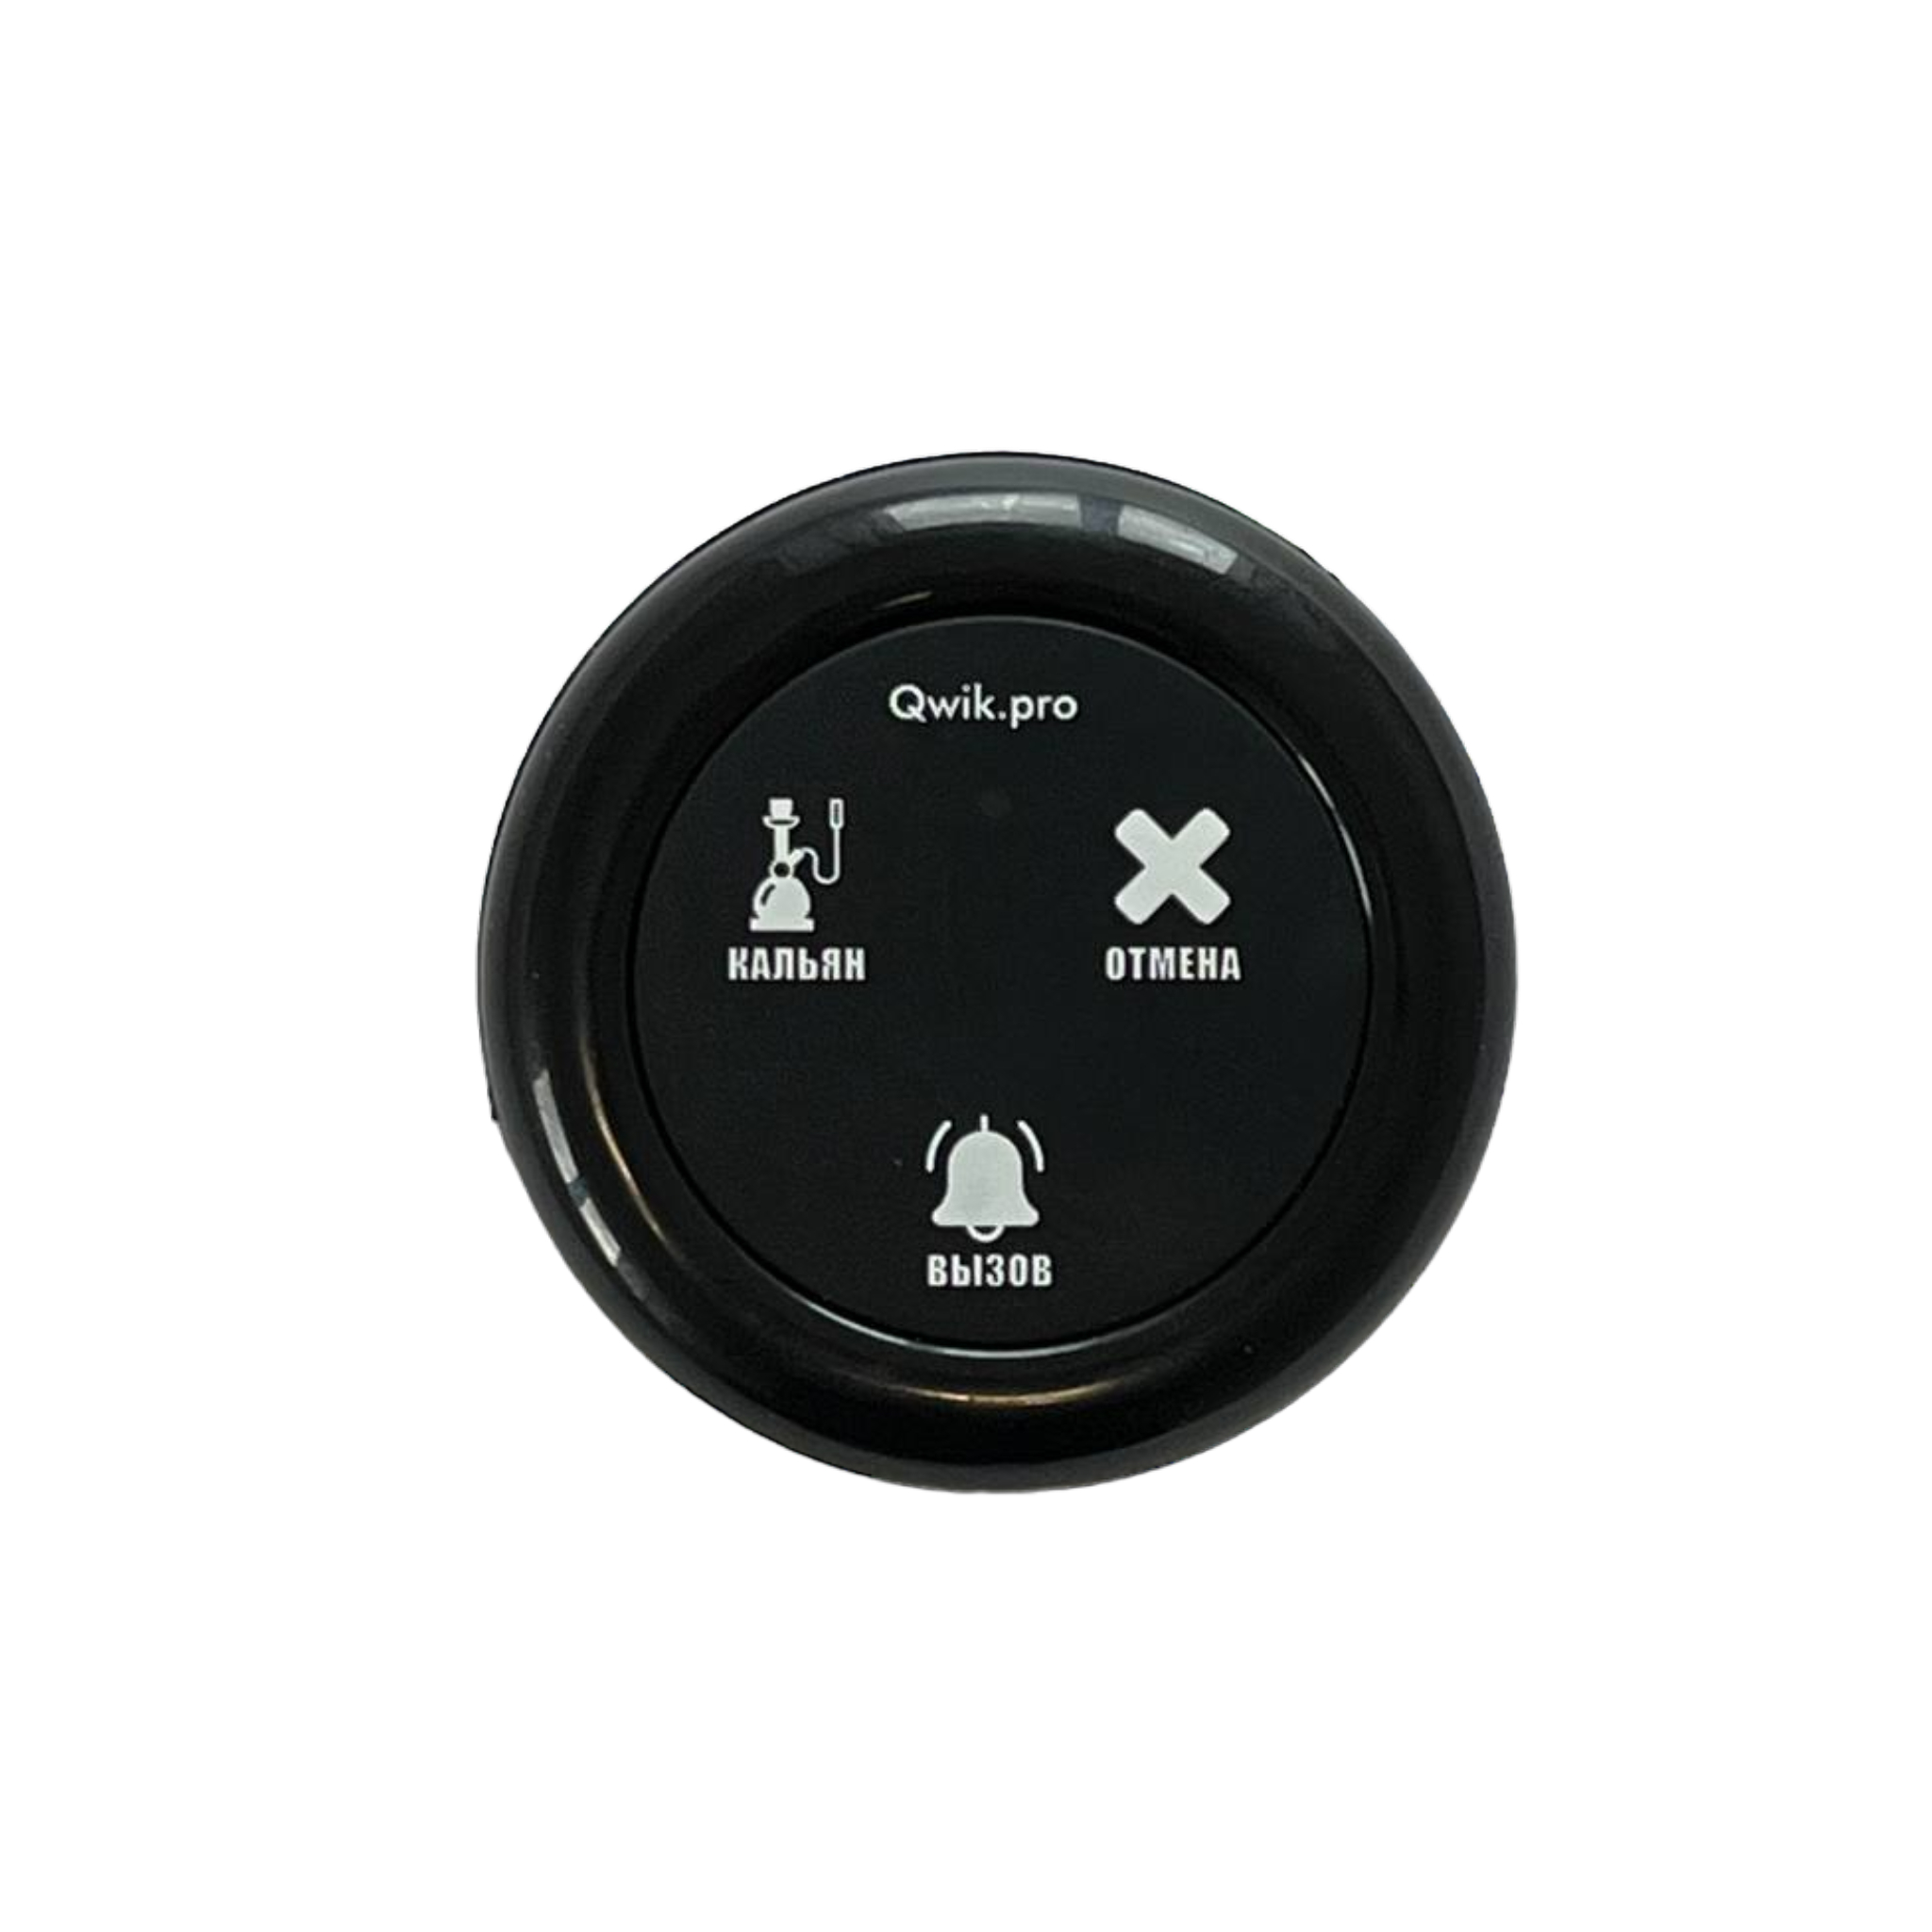 Кнопка вызова Qwik.pro 101 кнопка вызова персонала универсальная retekess r22901br защита от влаги ip02 и индикация